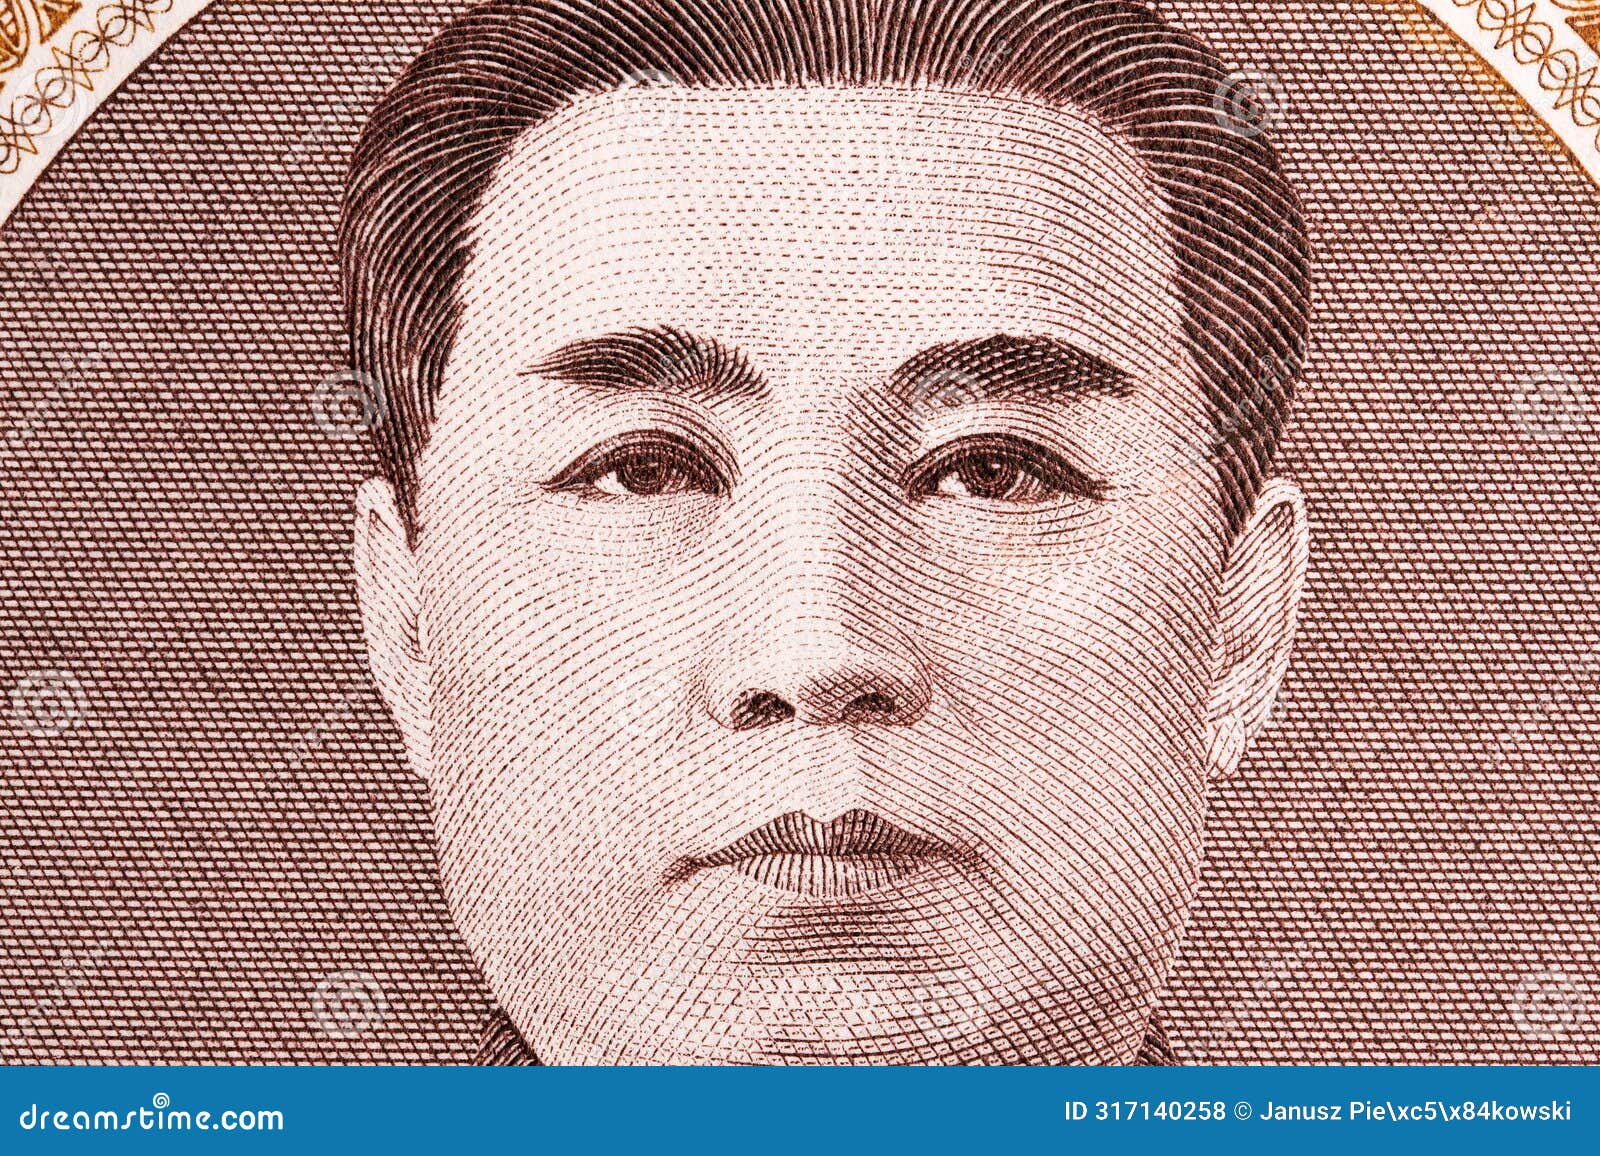 kim il sung a closeup portrait from north korean money